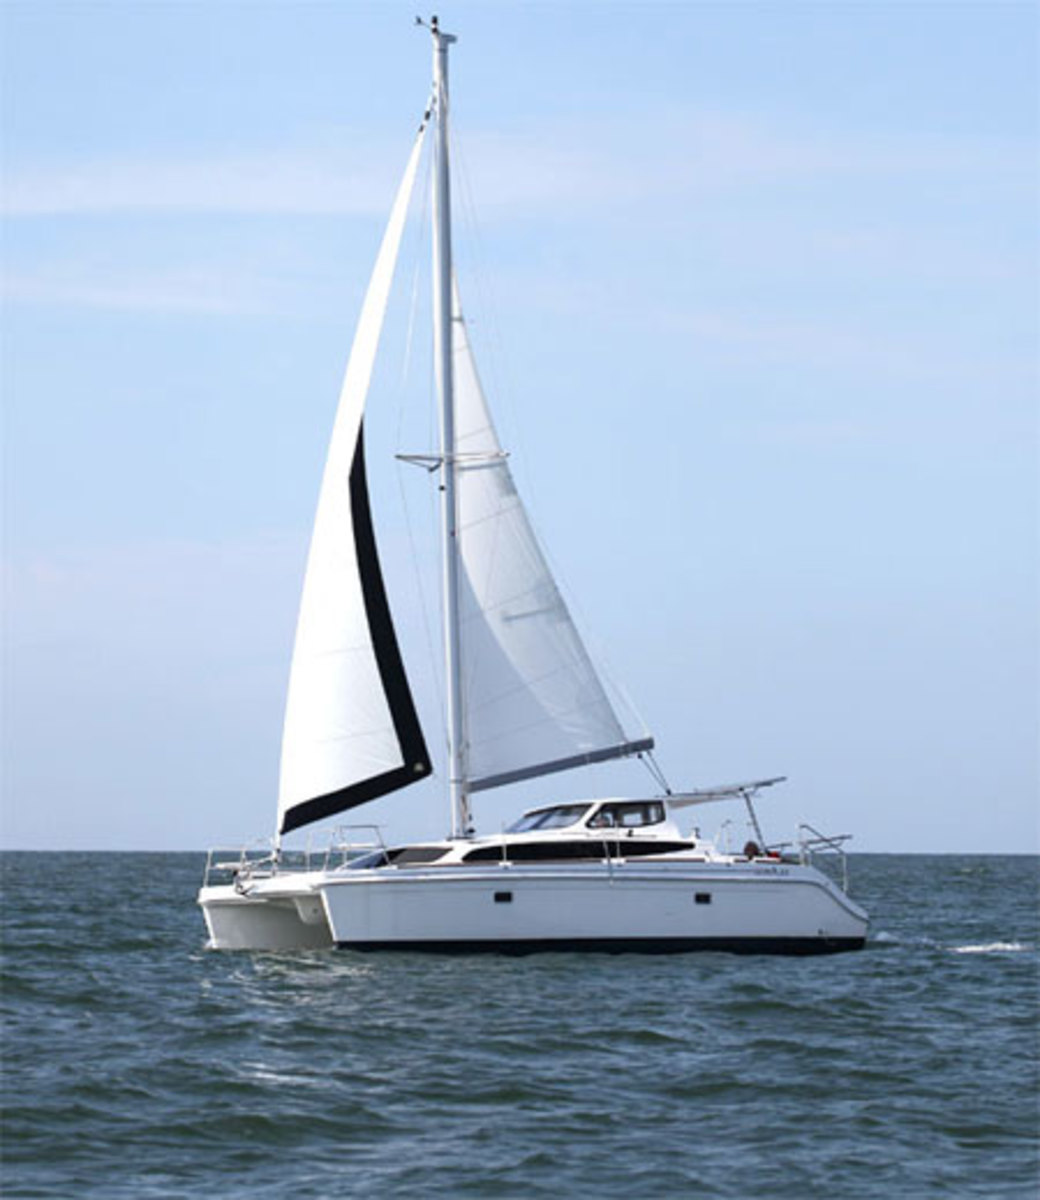 gemini legacy sailboat